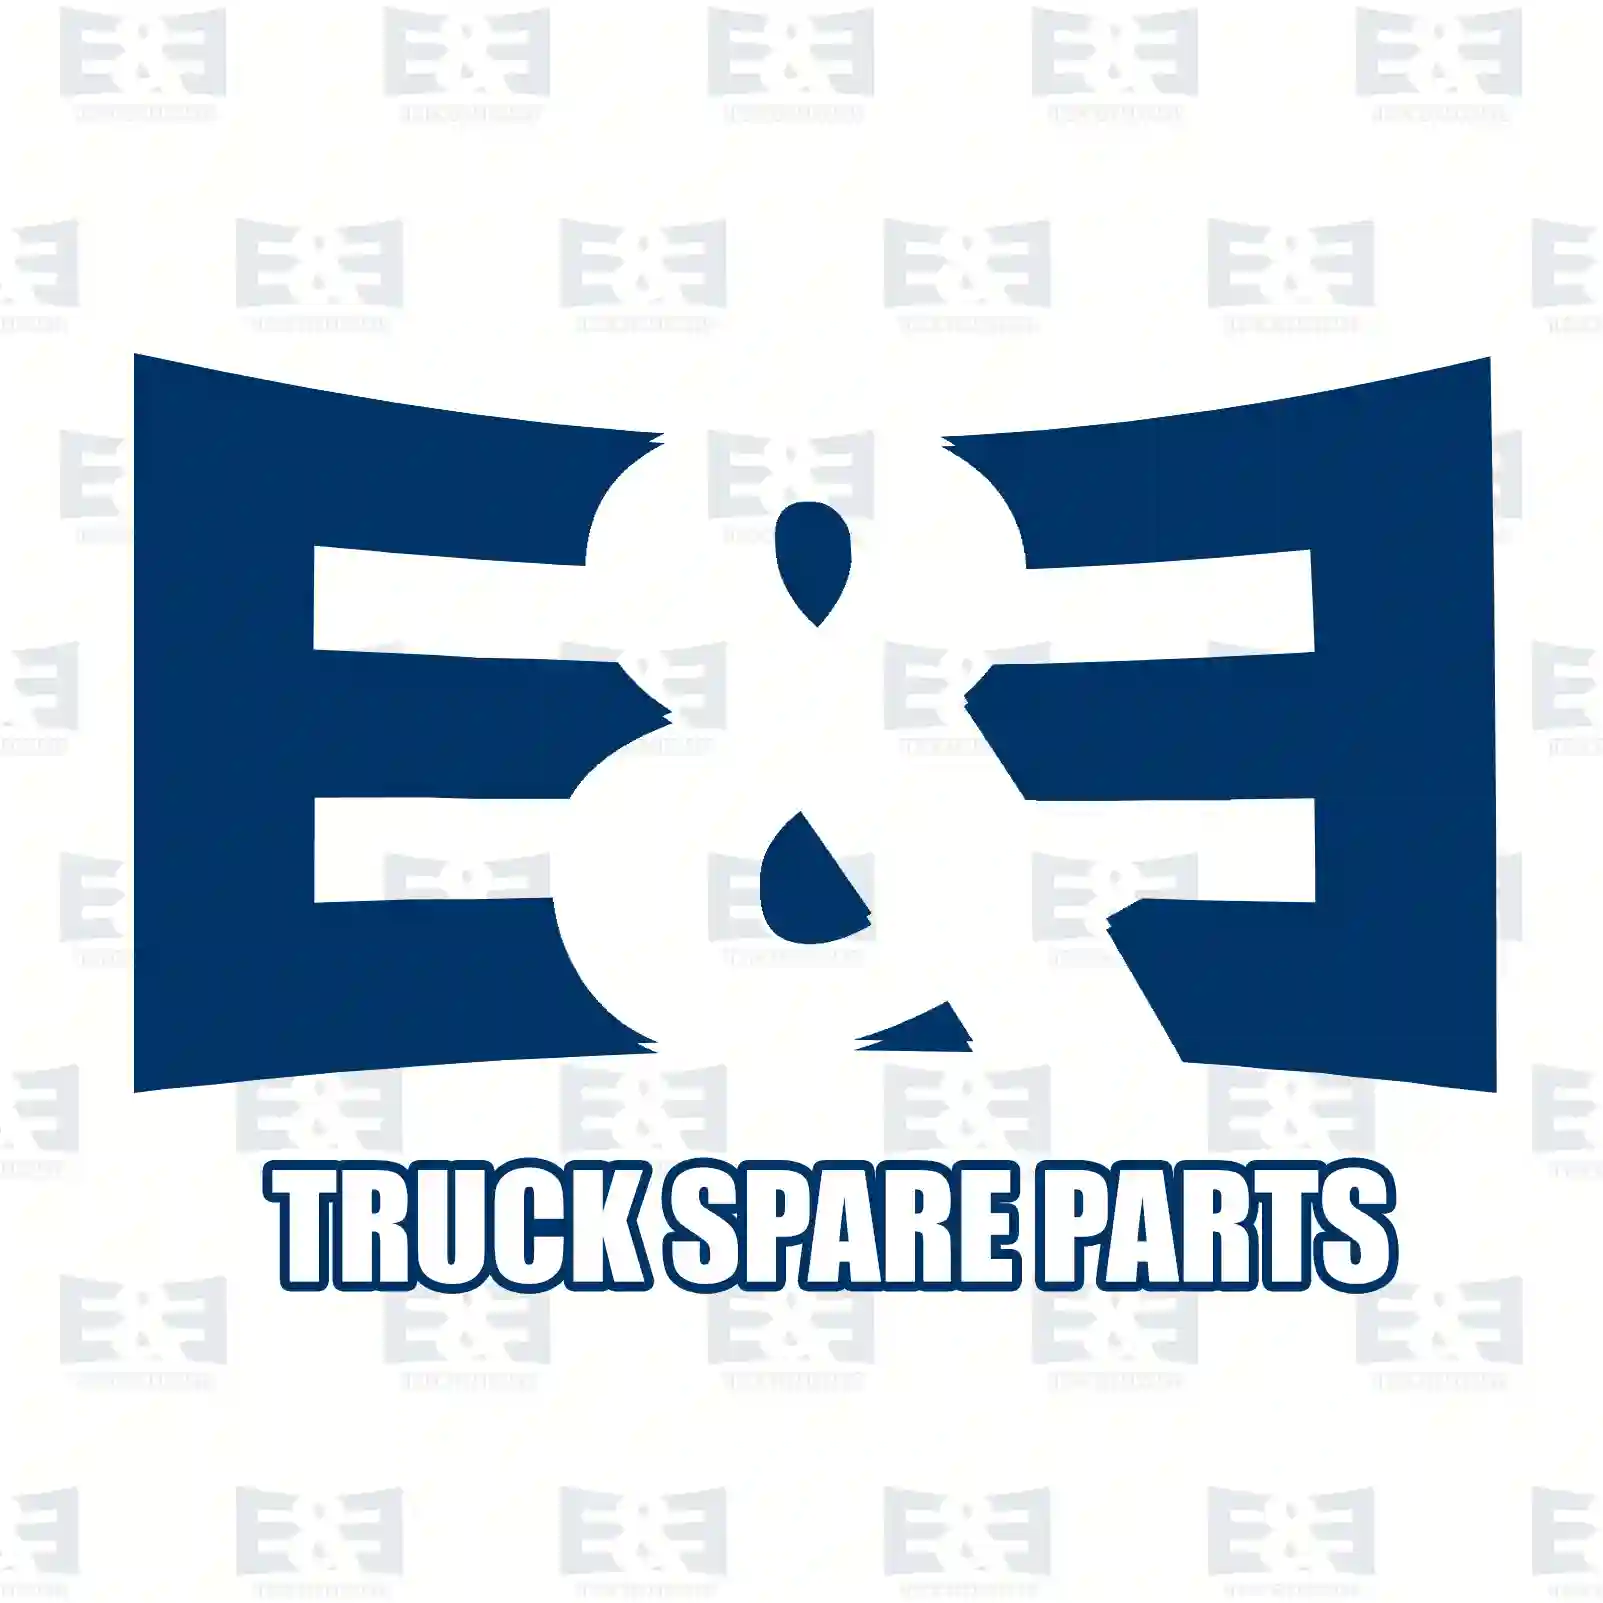 Clutch cylinder, 2E2288415, 93197630, 30610-00Q0E, 4419533, 8200673232 ||  2E2288415 E&E Truck Spare Parts | Truck Spare Parts, Auotomotive Spare Parts Clutch cylinder, 2E2288415, 93197630, 30610-00Q0E, 4419533, 8200673232 ||  2E2288415 E&E Truck Spare Parts | Truck Spare Parts, Auotomotive Spare Parts